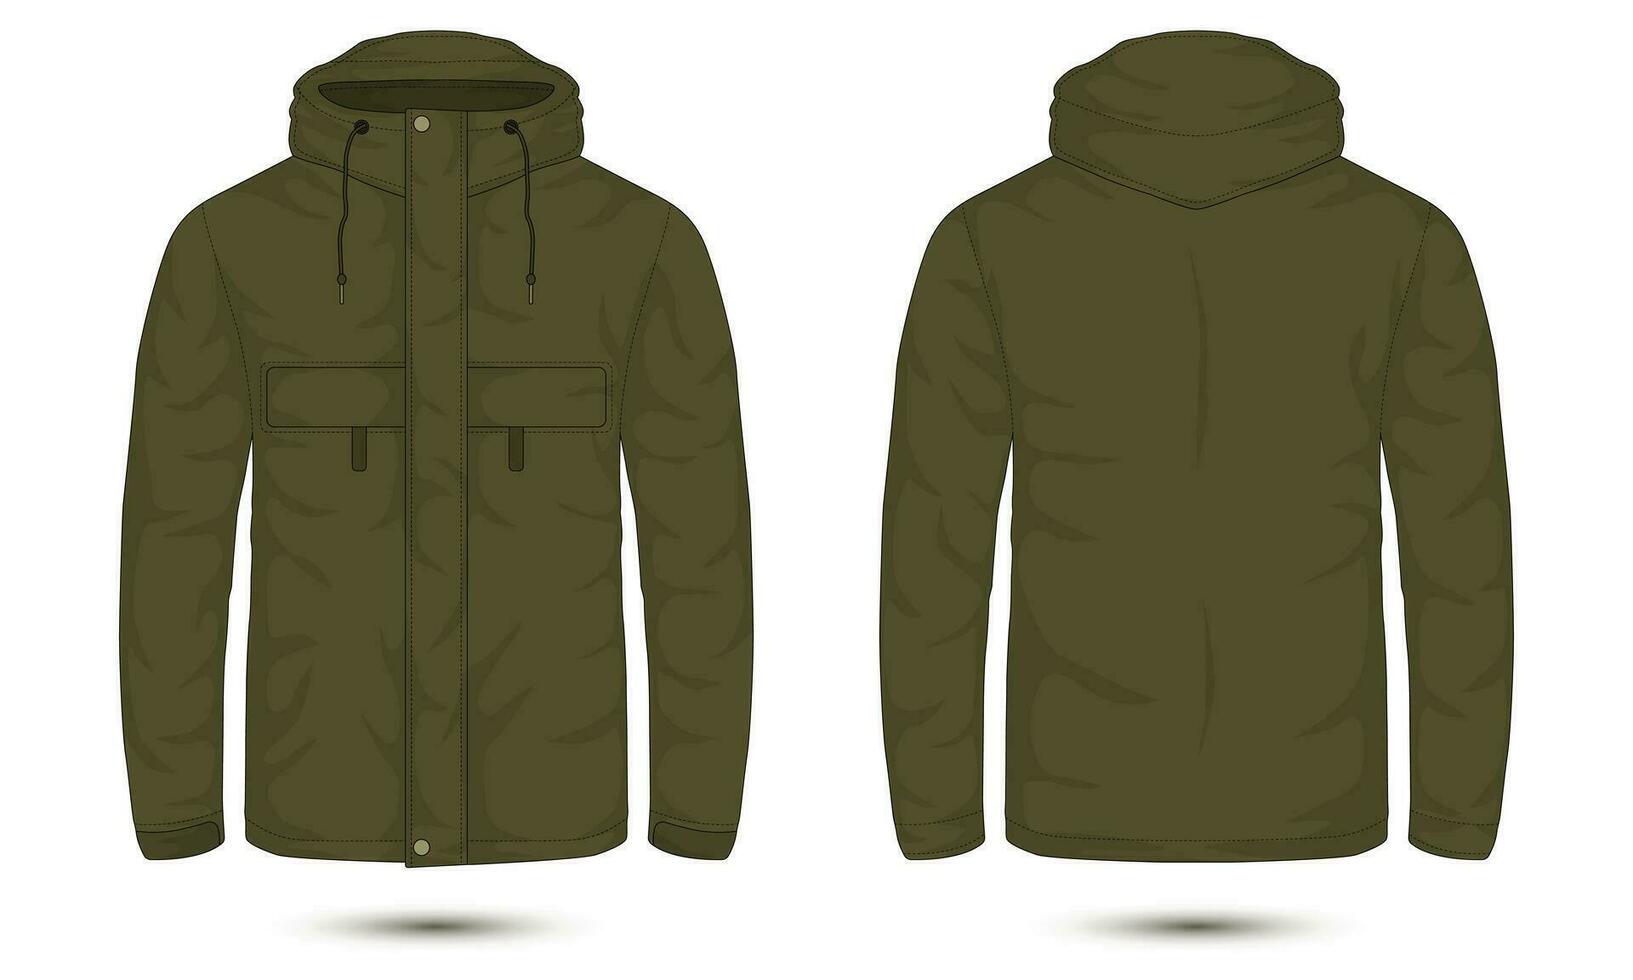 leger groen met een kap gewoontjes jasje voorkant en terug visie vector